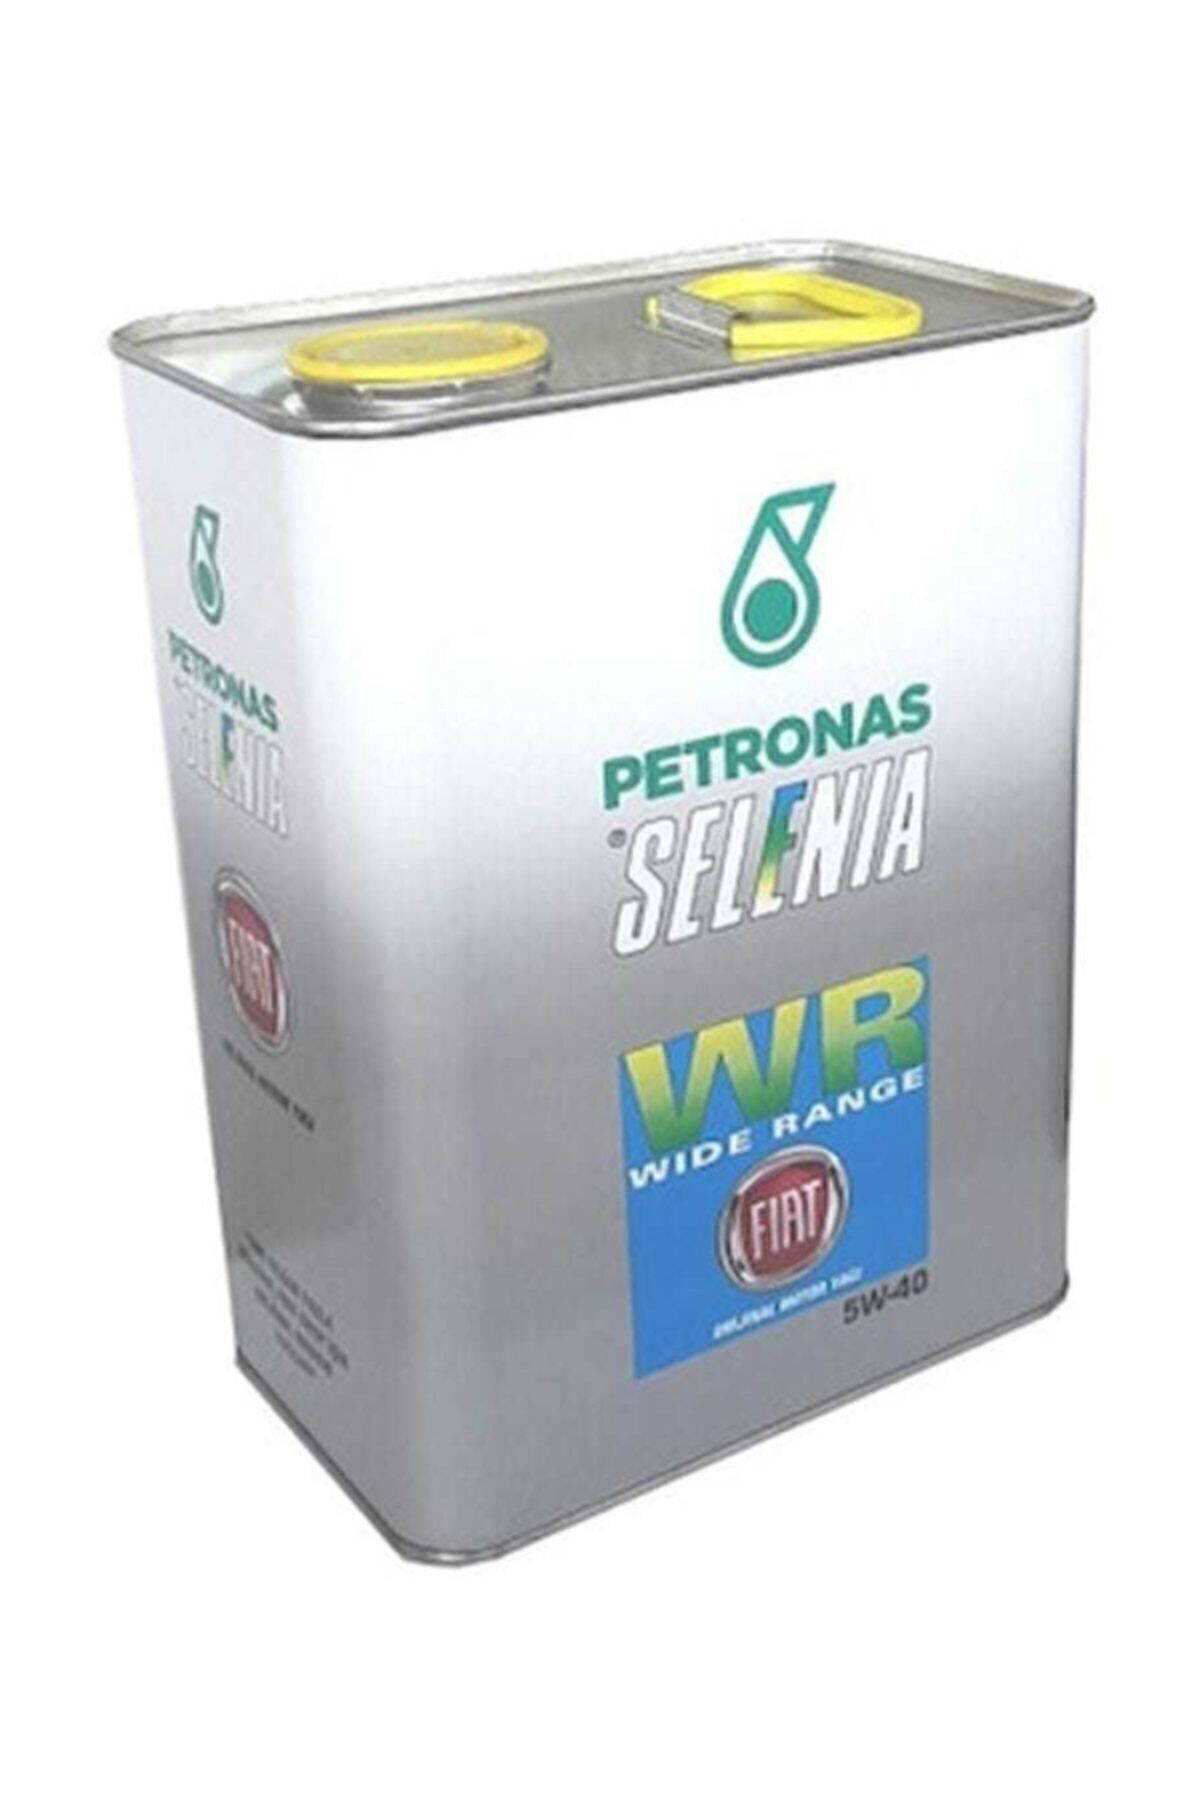 Petronas Selenia 20k Plus 5w40 3.2 Lt